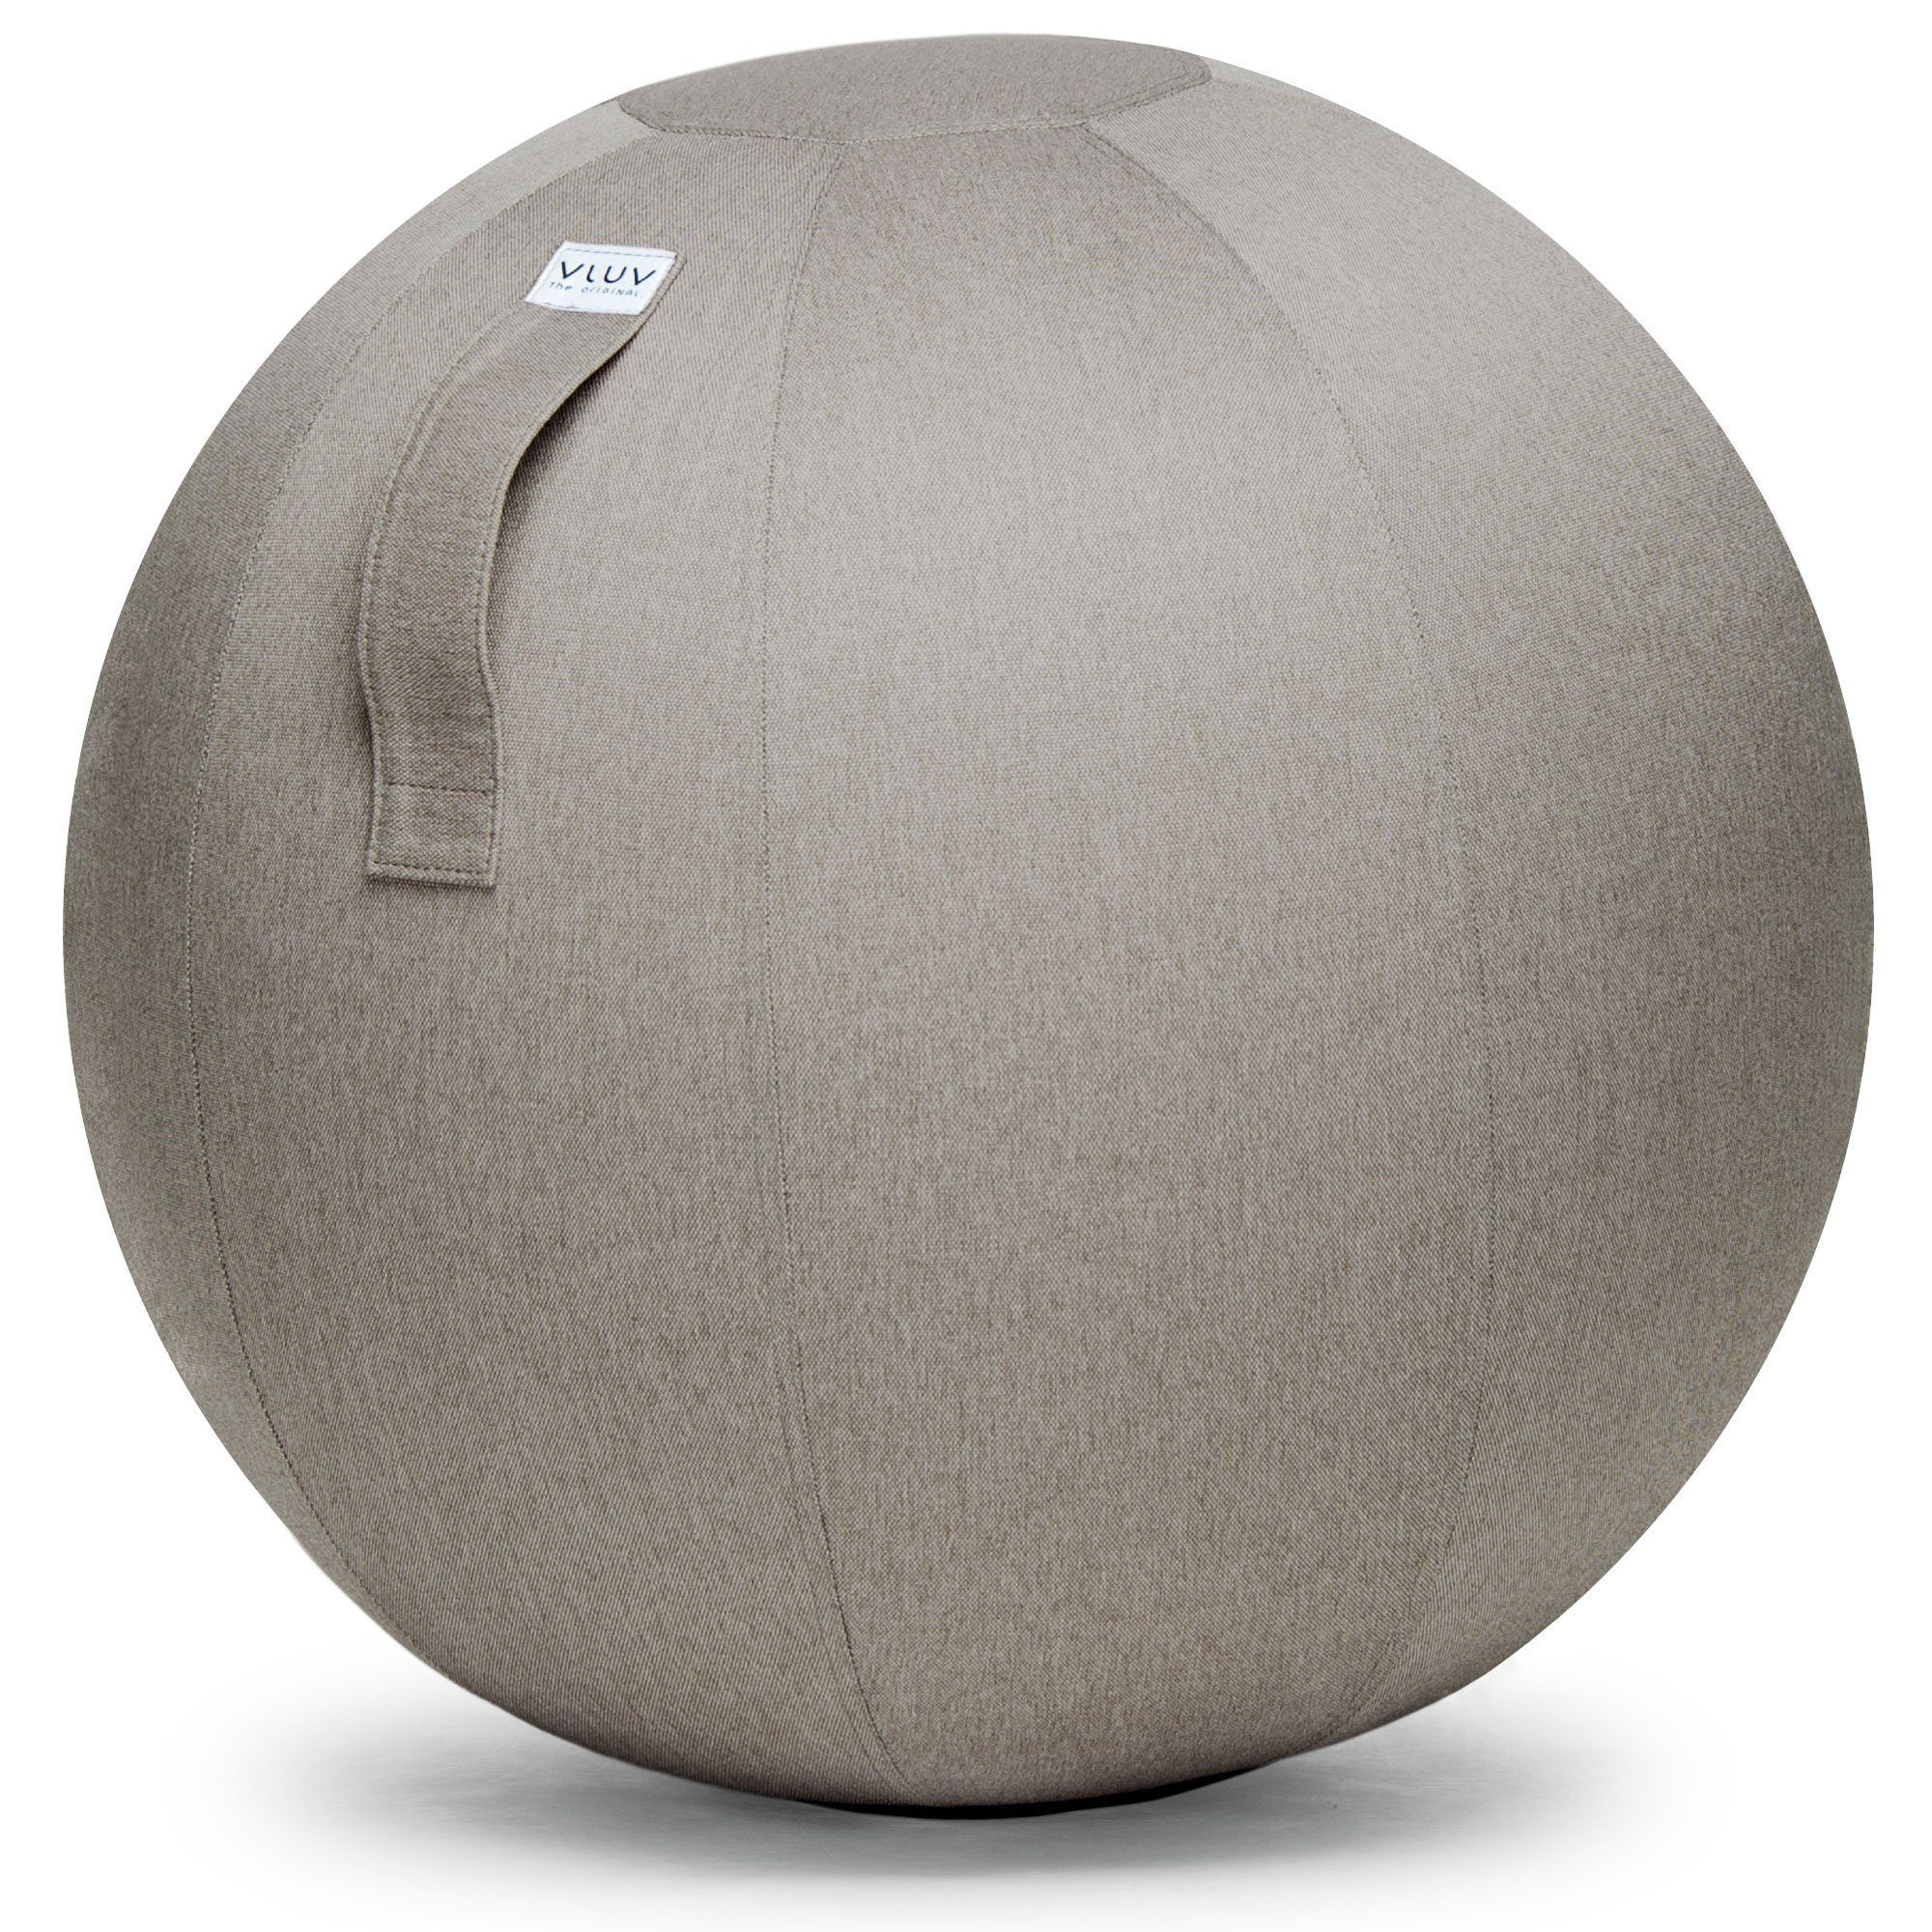 VLUV Sitzball BOL LEIV Stoff-Sitzball, ergonomisches Sitzmöbel für Büro und Zuhause, Farbe: Stone (beige), Ø 60cm - 65cm, Möbelbezugsstoff, robust und formstabil, mit Tragegriff | Sportbälle